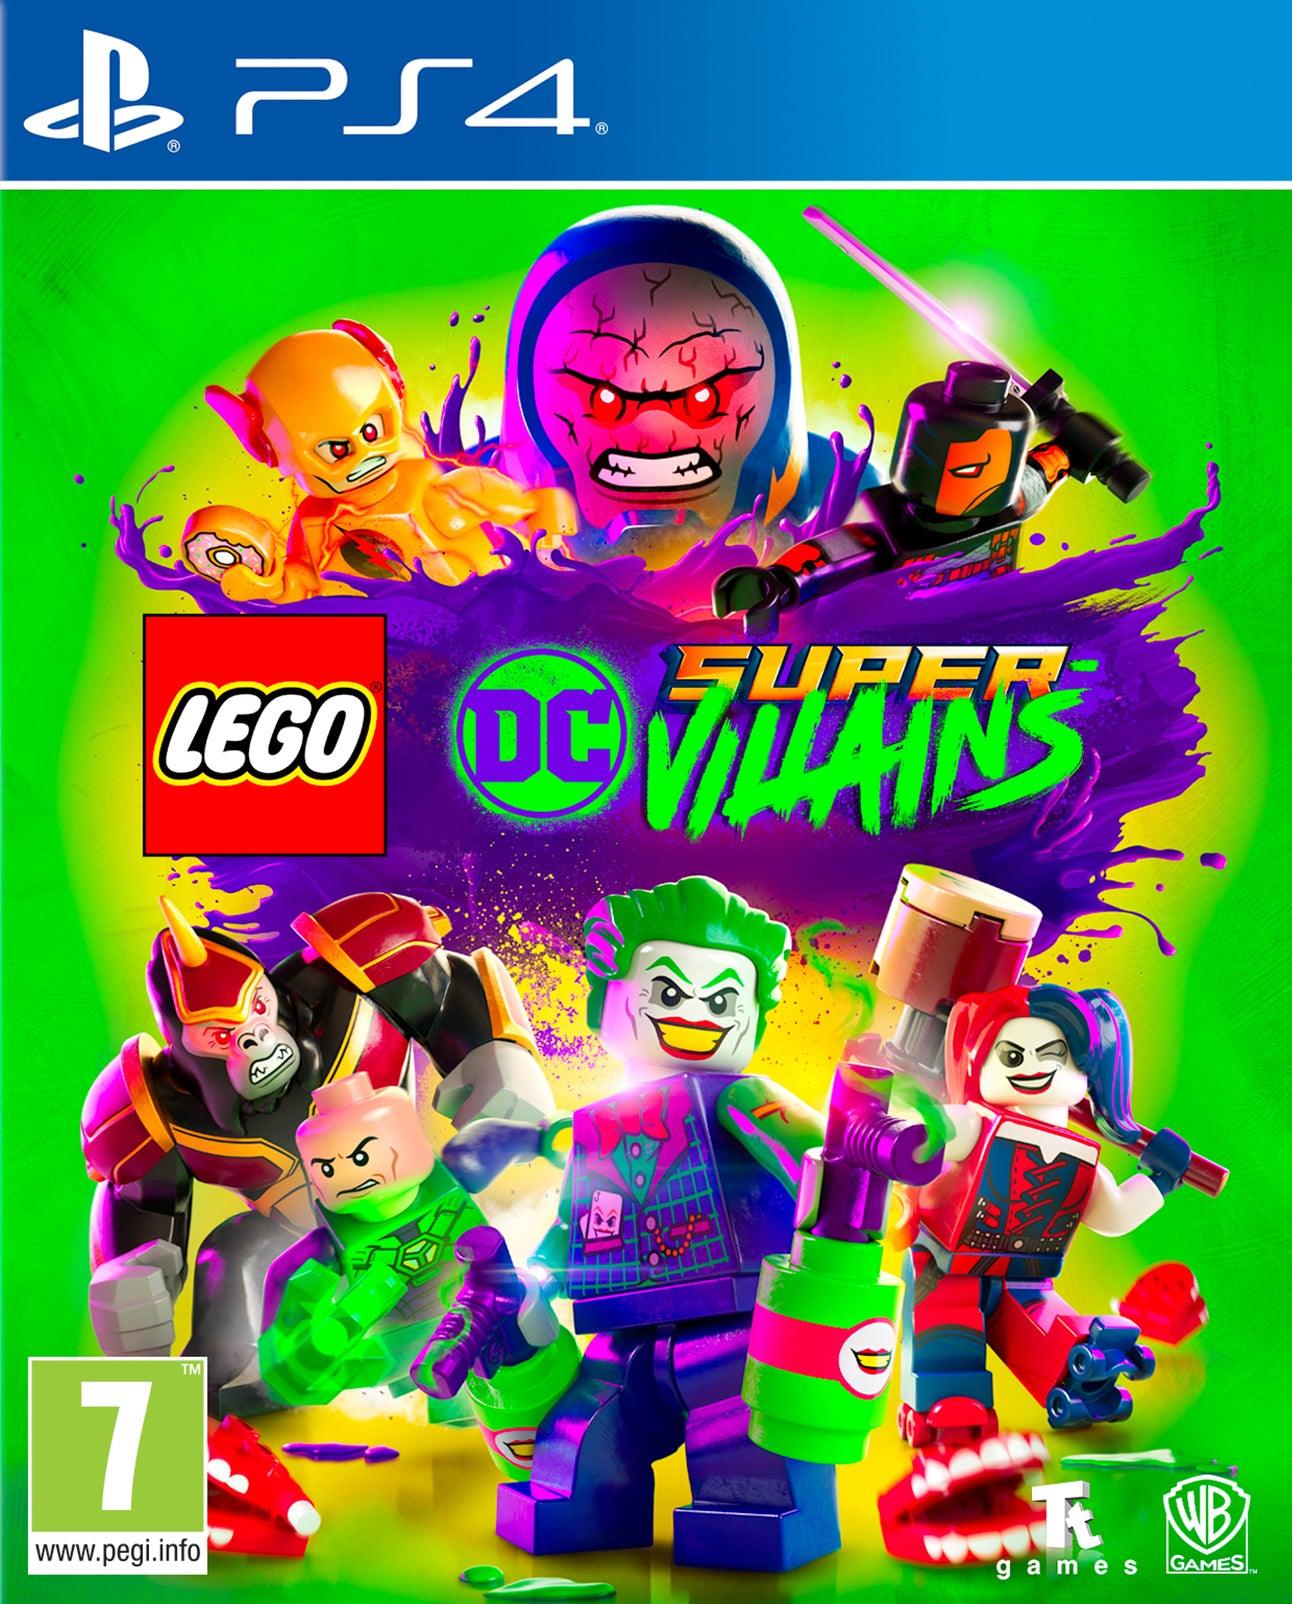 Lego Dc Super Villains - Want a New Gadget